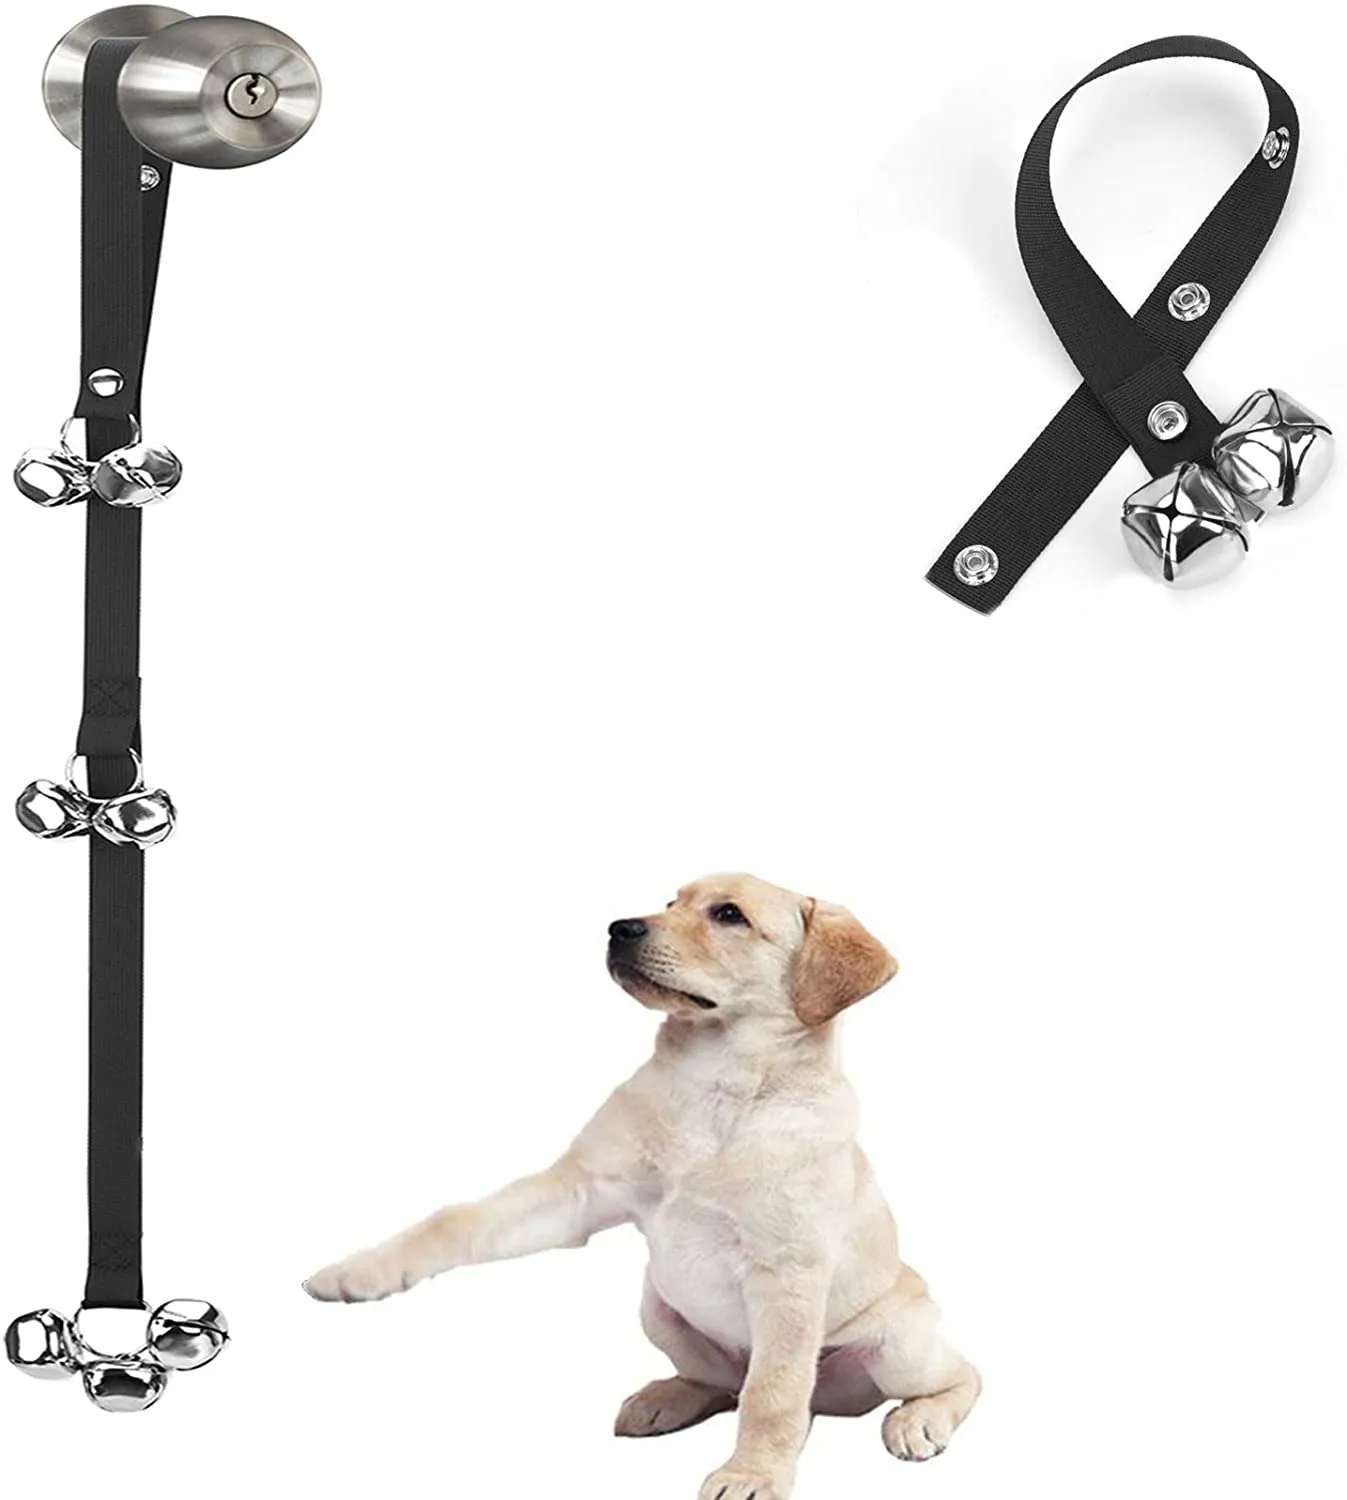 Köpek Kapı Zili Premium Lazımlık Ayarlanabilir Pet Çanlarınızı Kolayca Eğitim İçin - Yüksek Kalite - 7 Ekstra Büyük Yüksek Loud